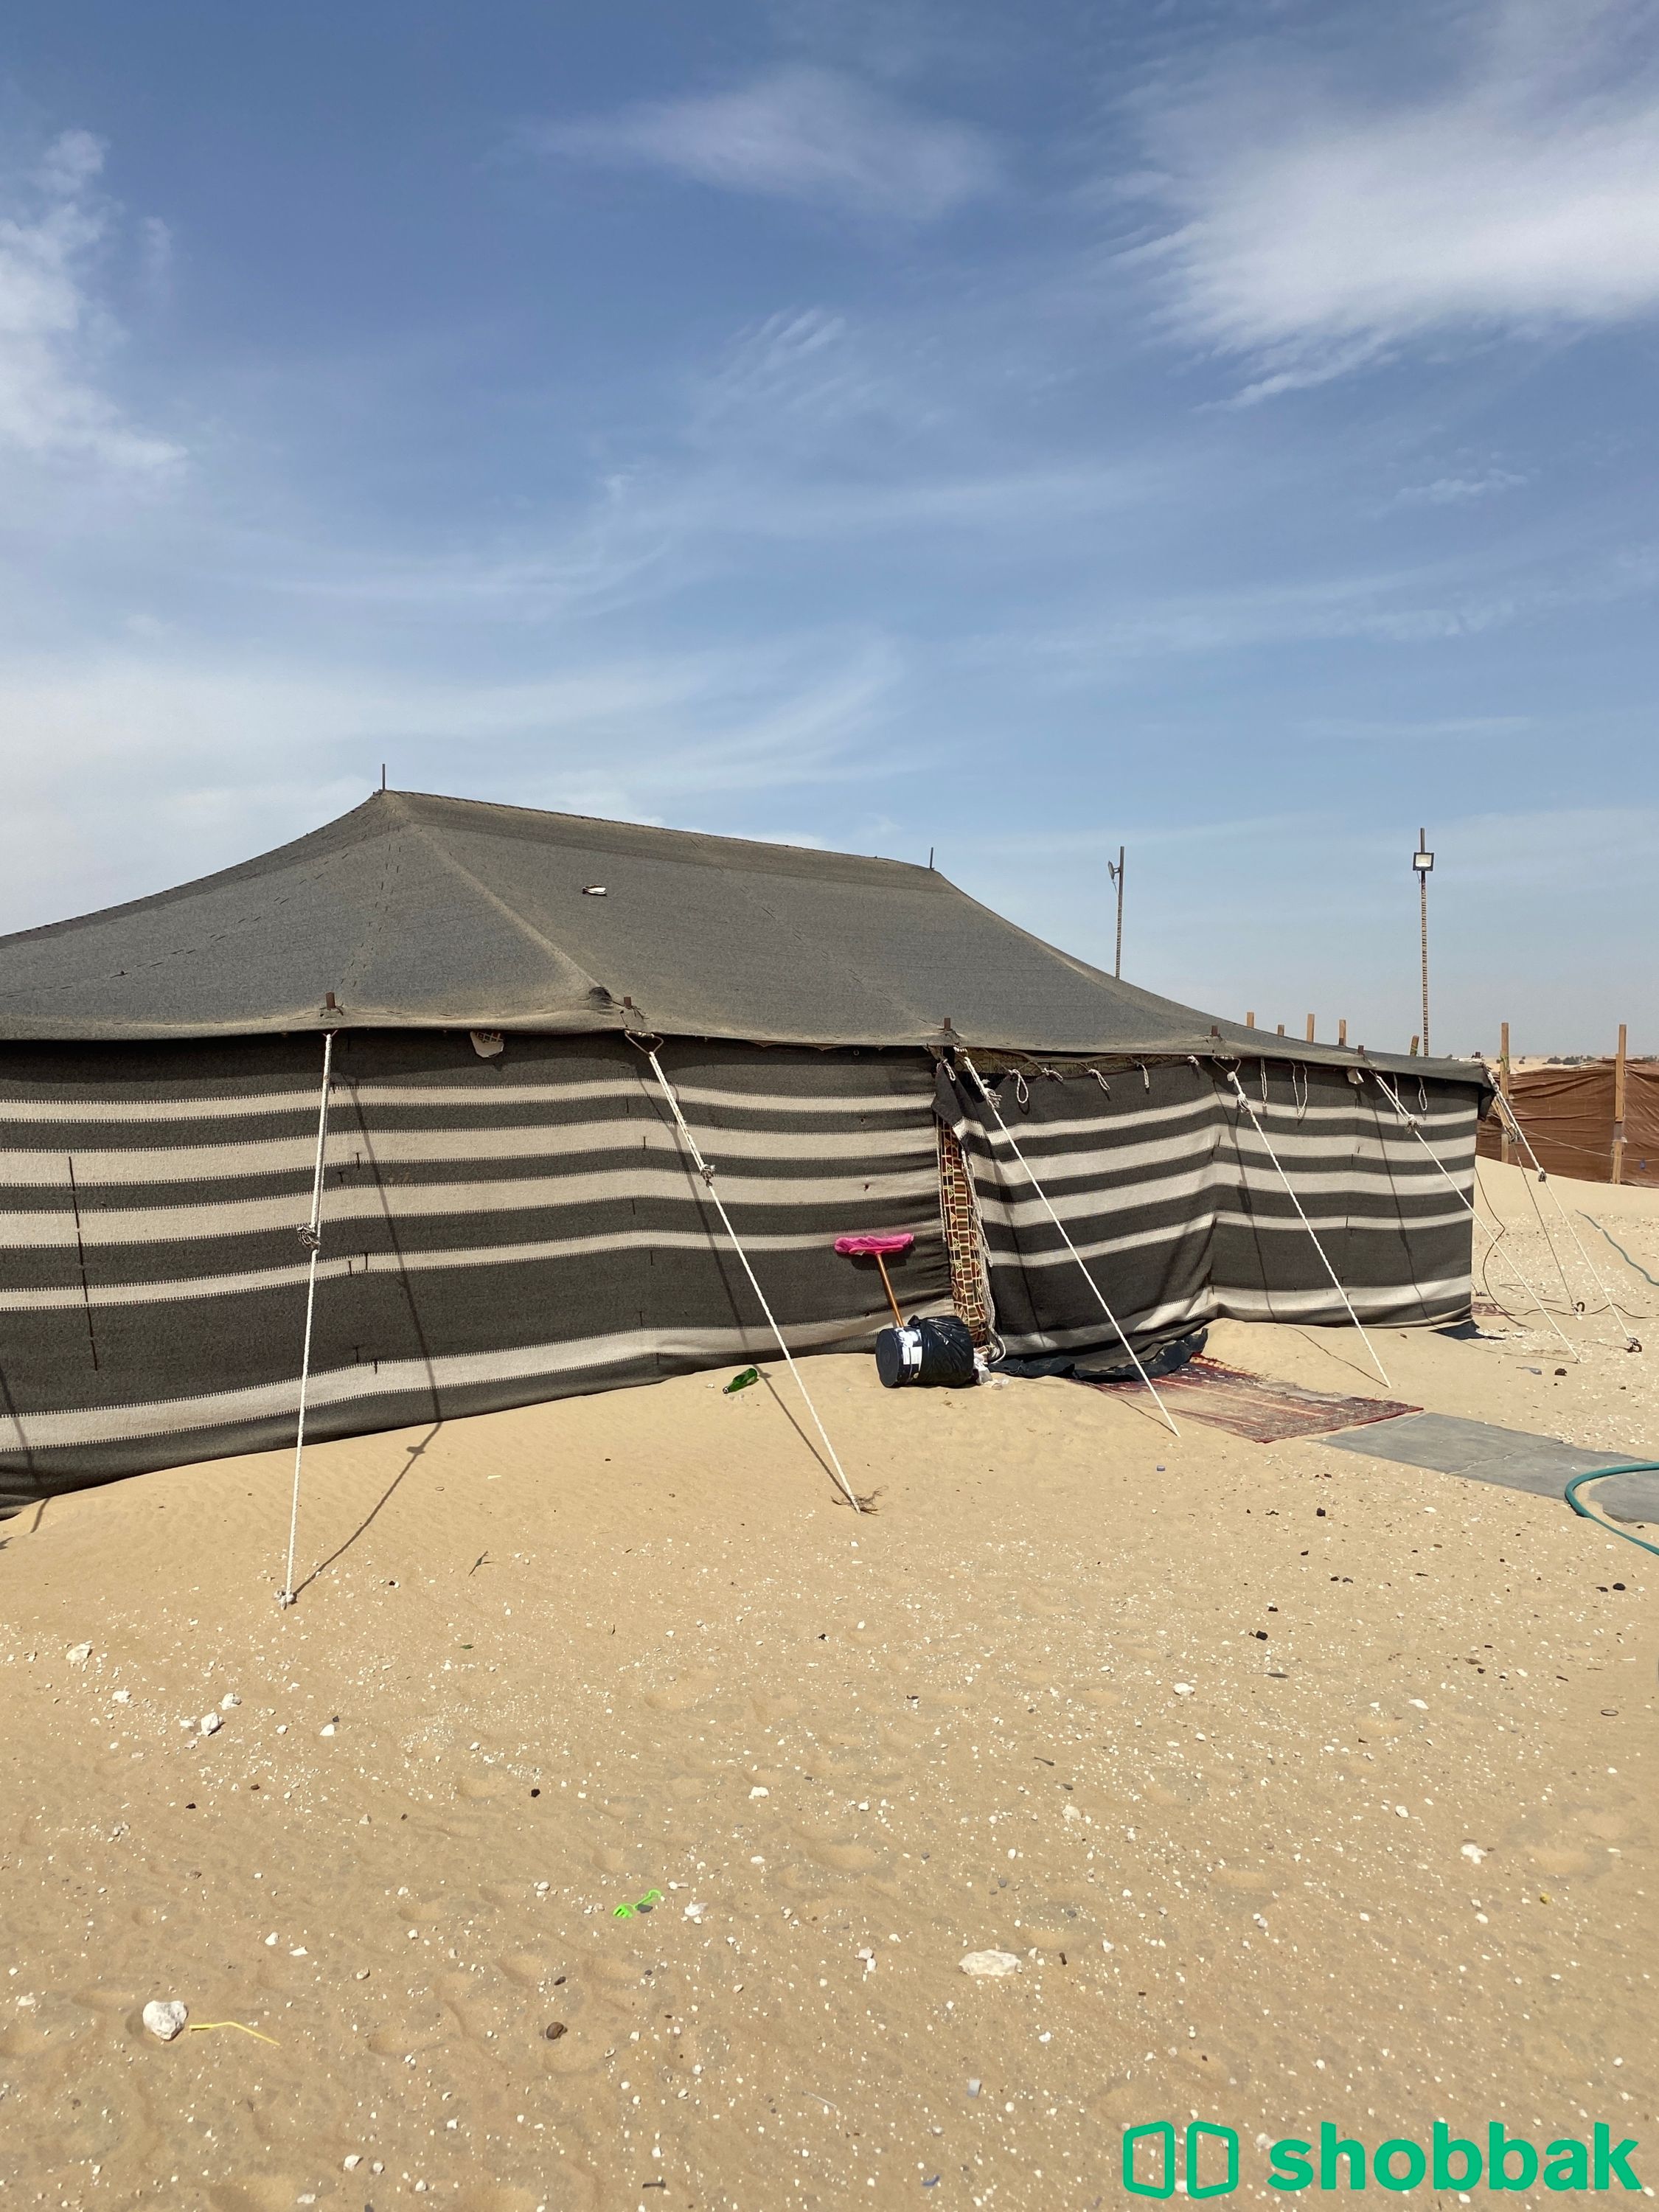 مخيم للإيجار طريق المطار ، الدمام Shobbak Saudi Arabia